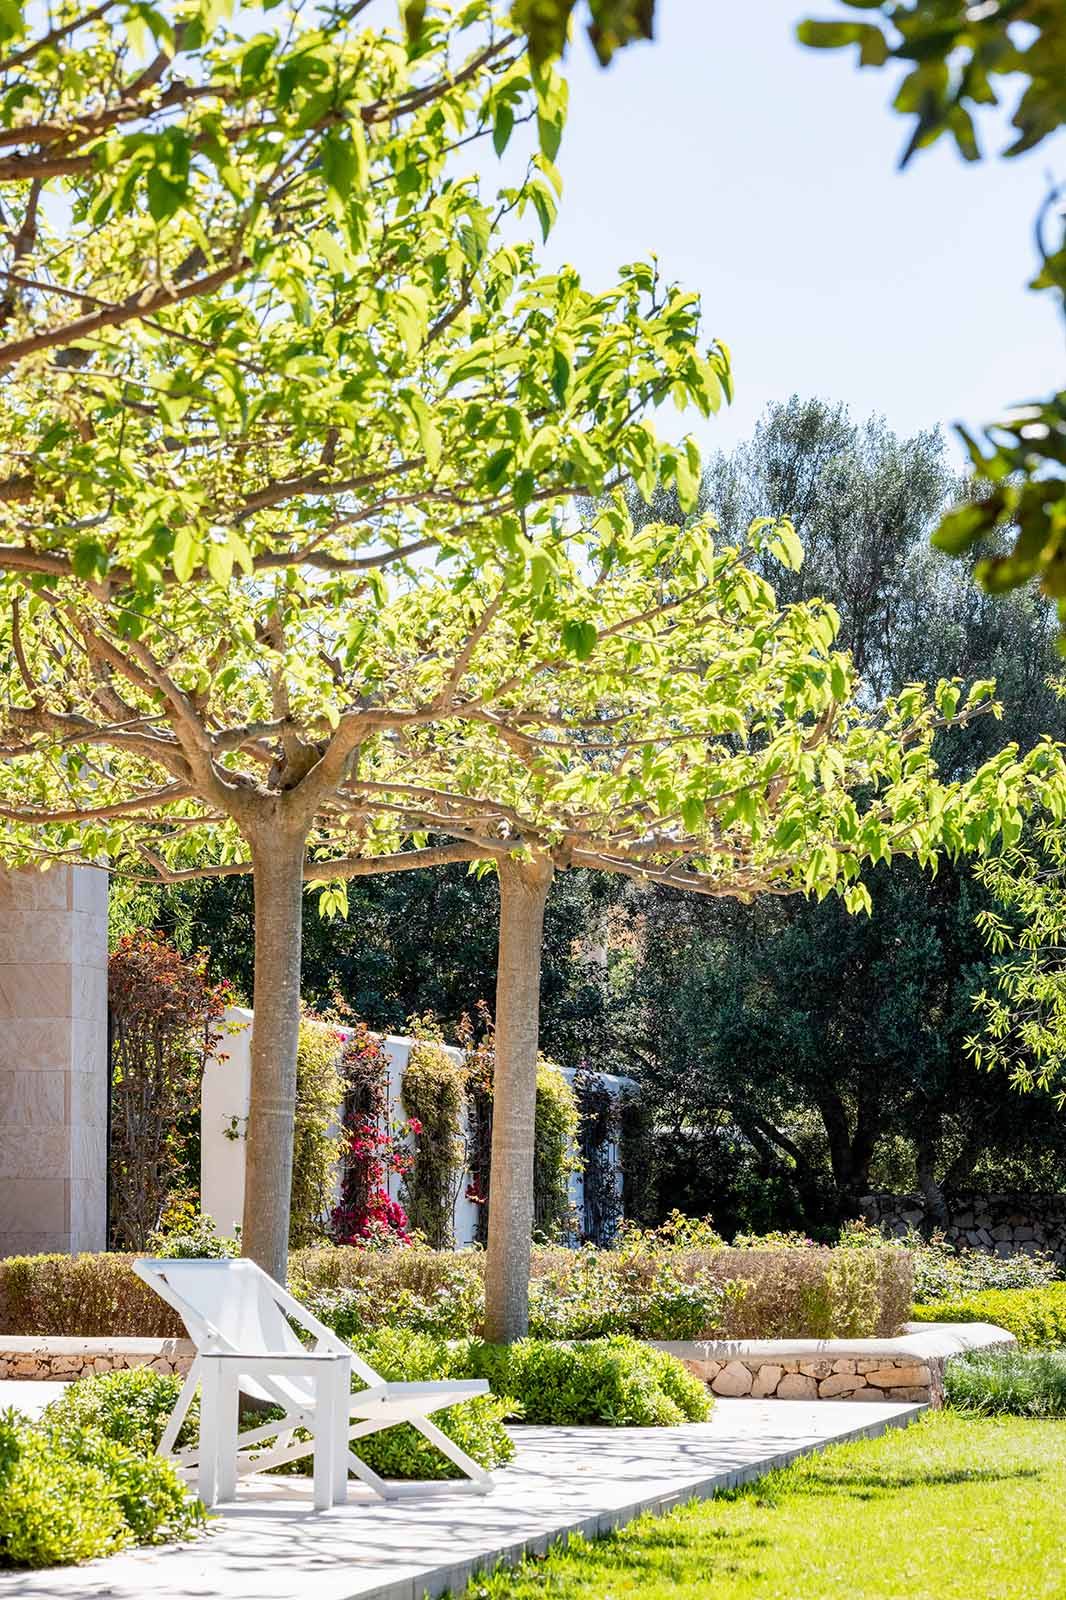 Dachförmig geschnittene Bäume als natürlicher Sonnenschutz • Andrea Lechte • Mallorca